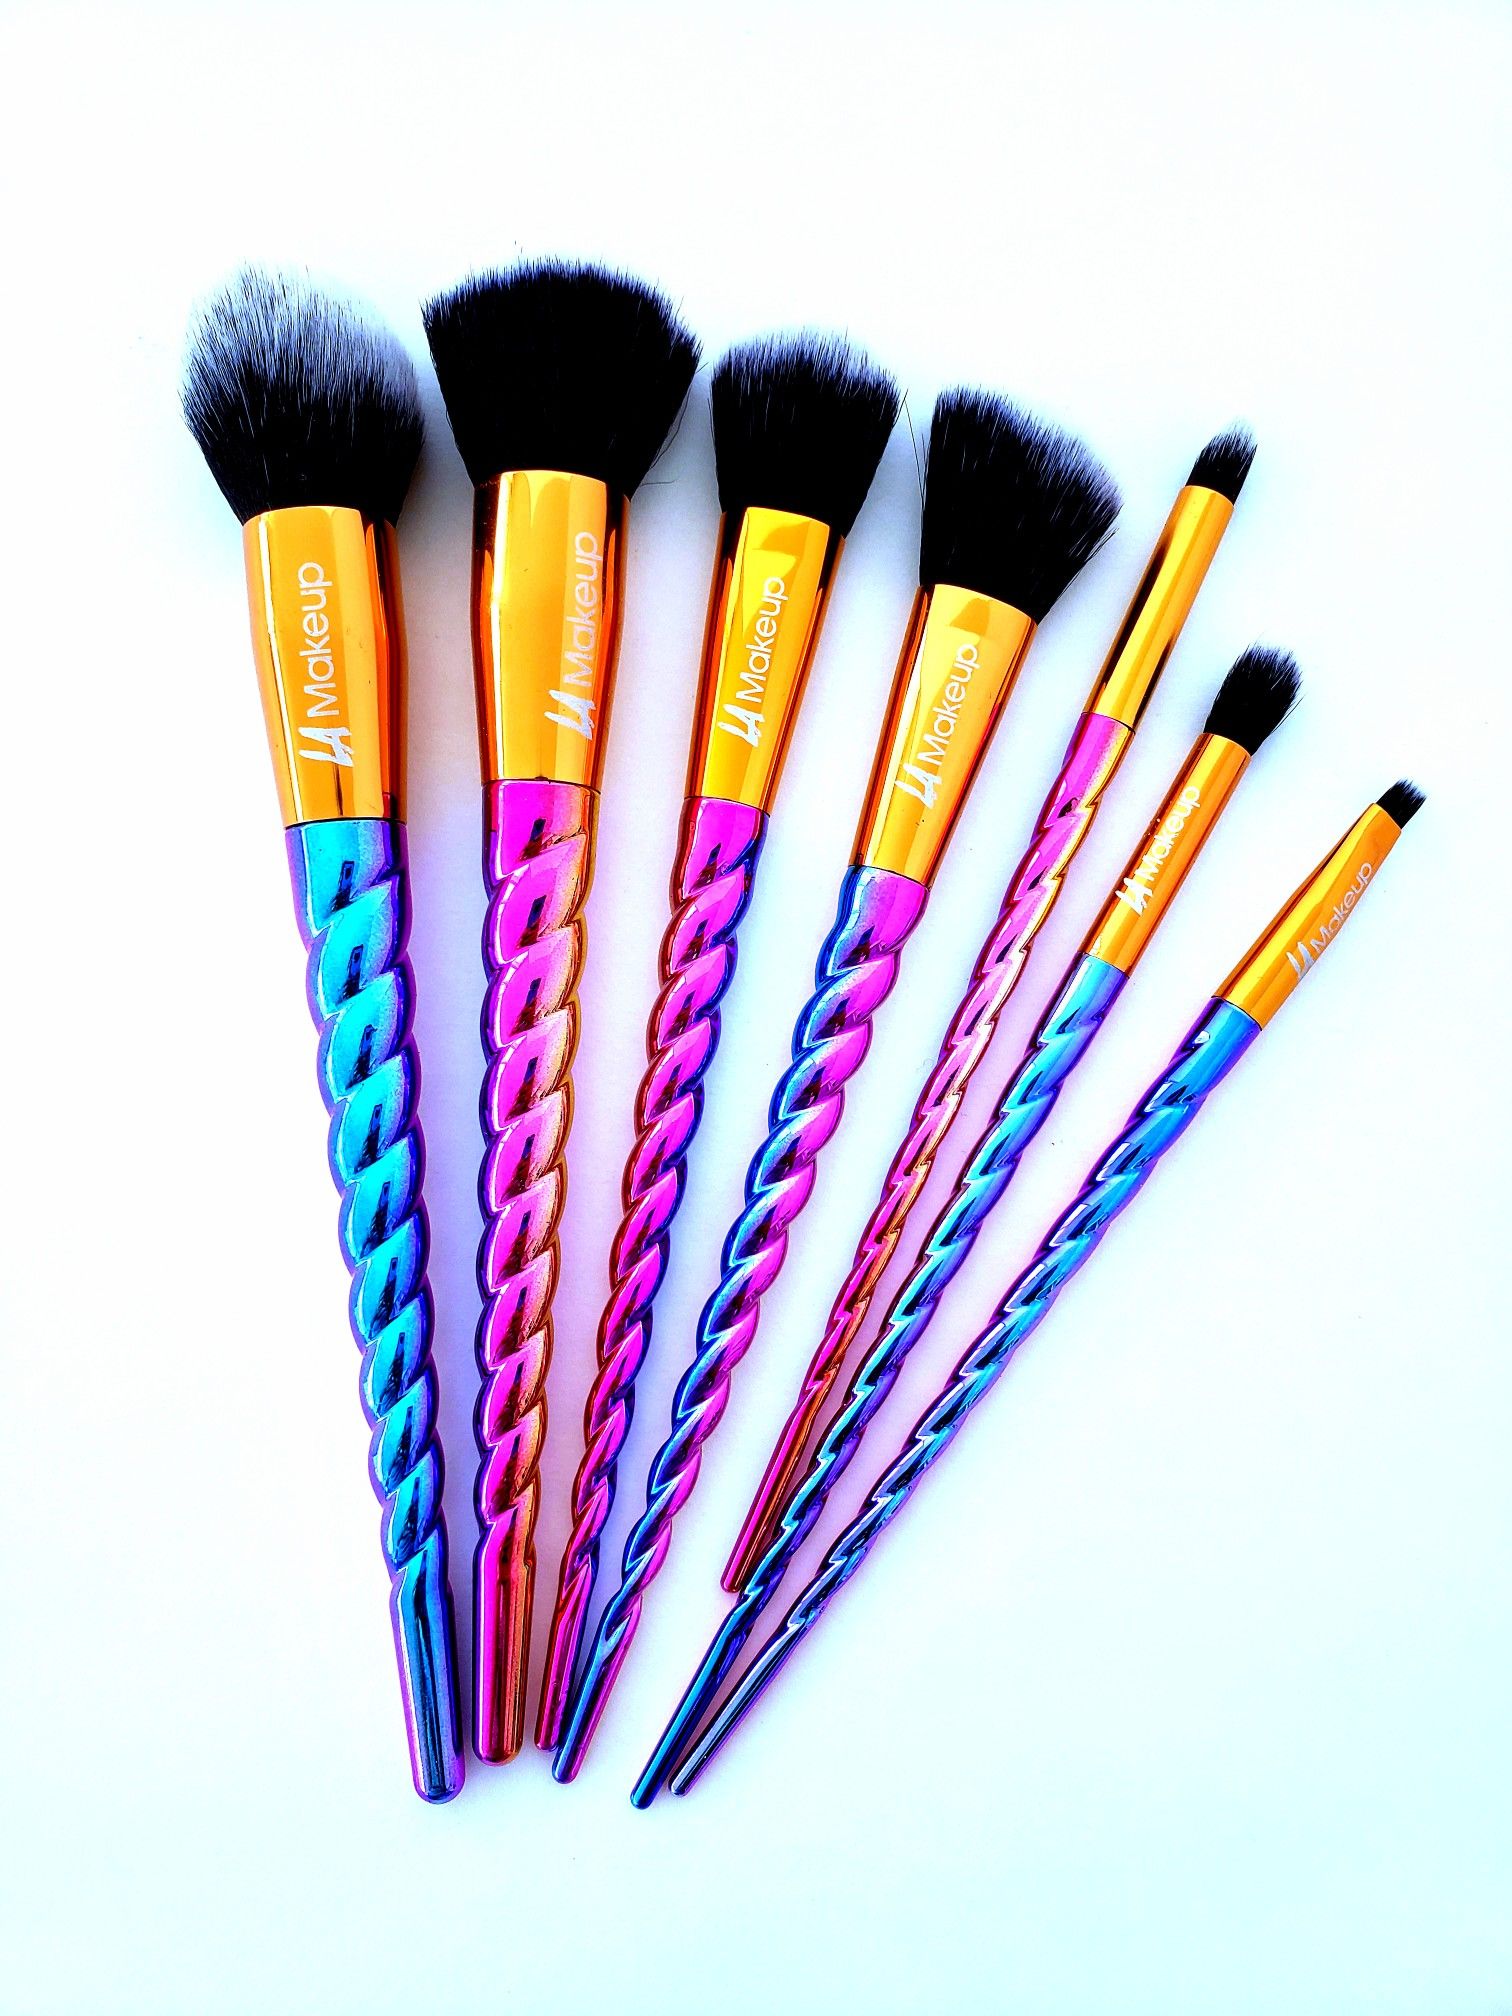 Colorful unicorn makeup brushes